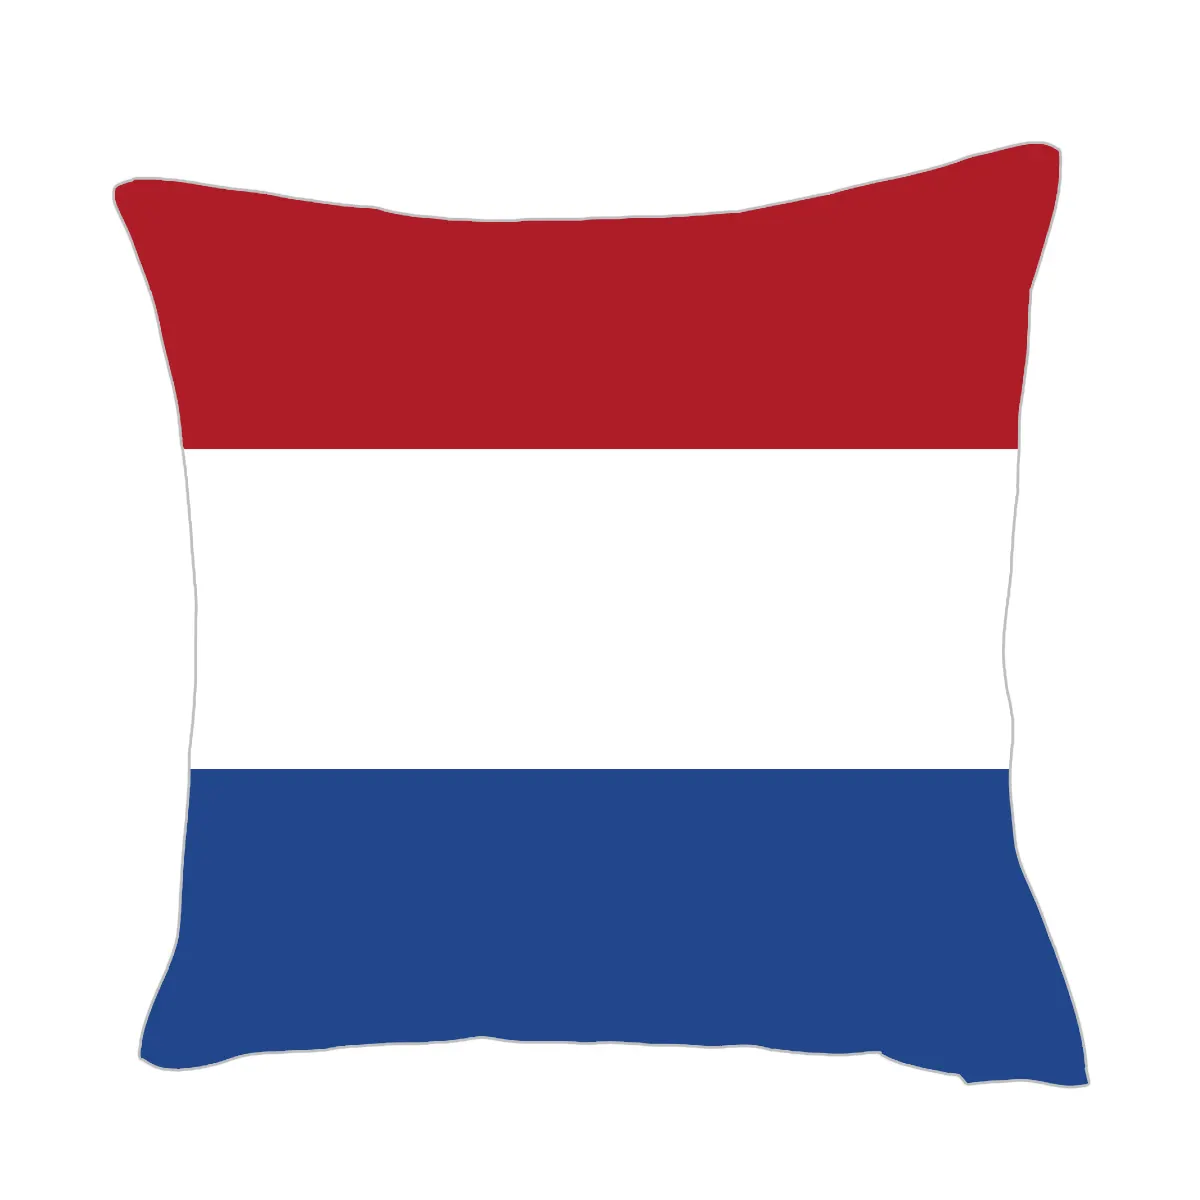 도매 네덜란드 국가 국기 로고 축구 팬 항목 리넨 천 45x45 cm 베개 커버 공장 가격